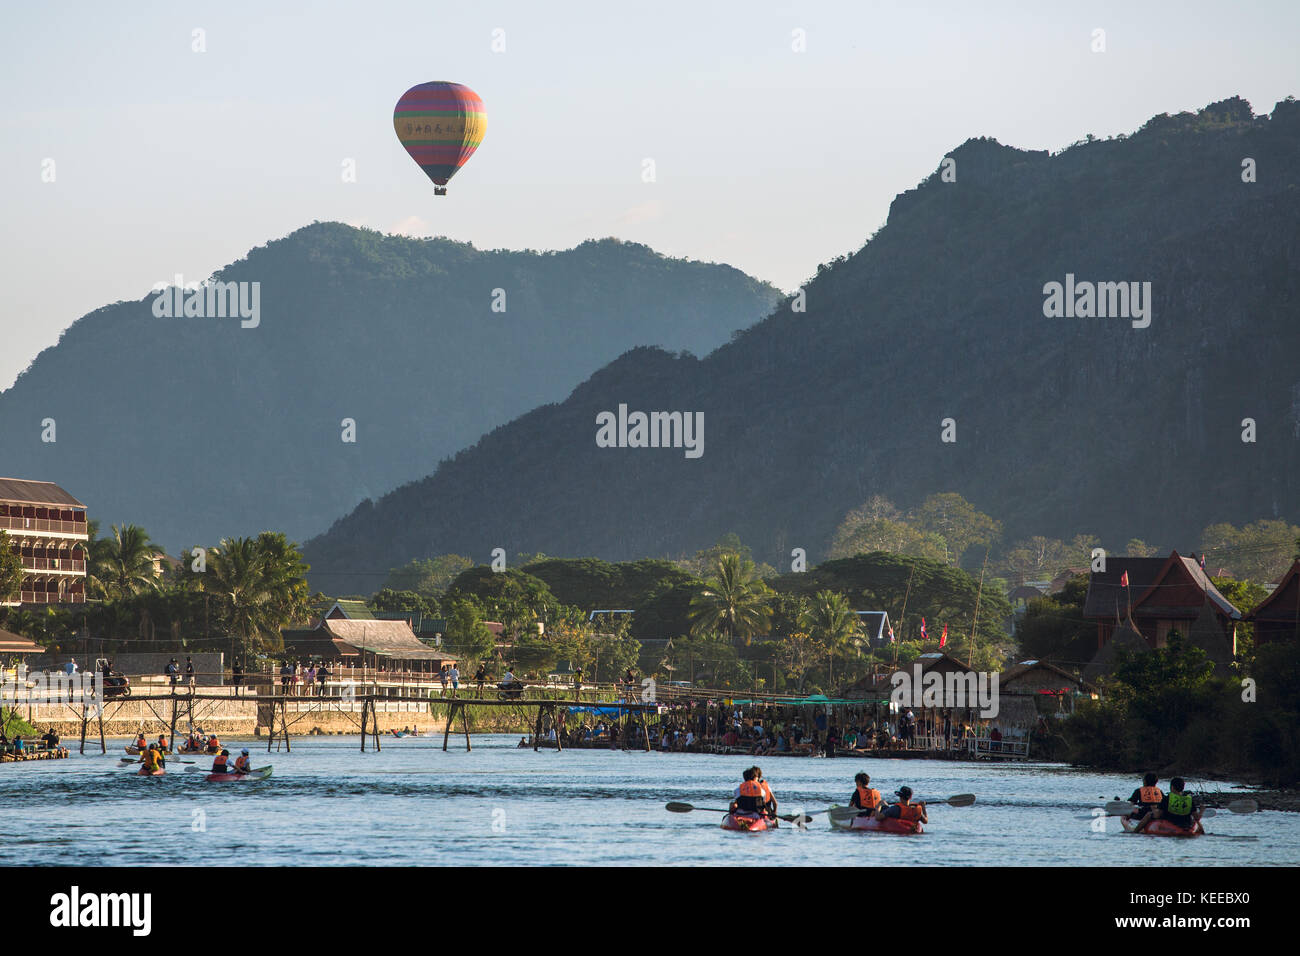 Vang Vieng, Laos - January 19, 2017: Hot air baloon in sky in Vang Vieng, Laos. Stock Photo